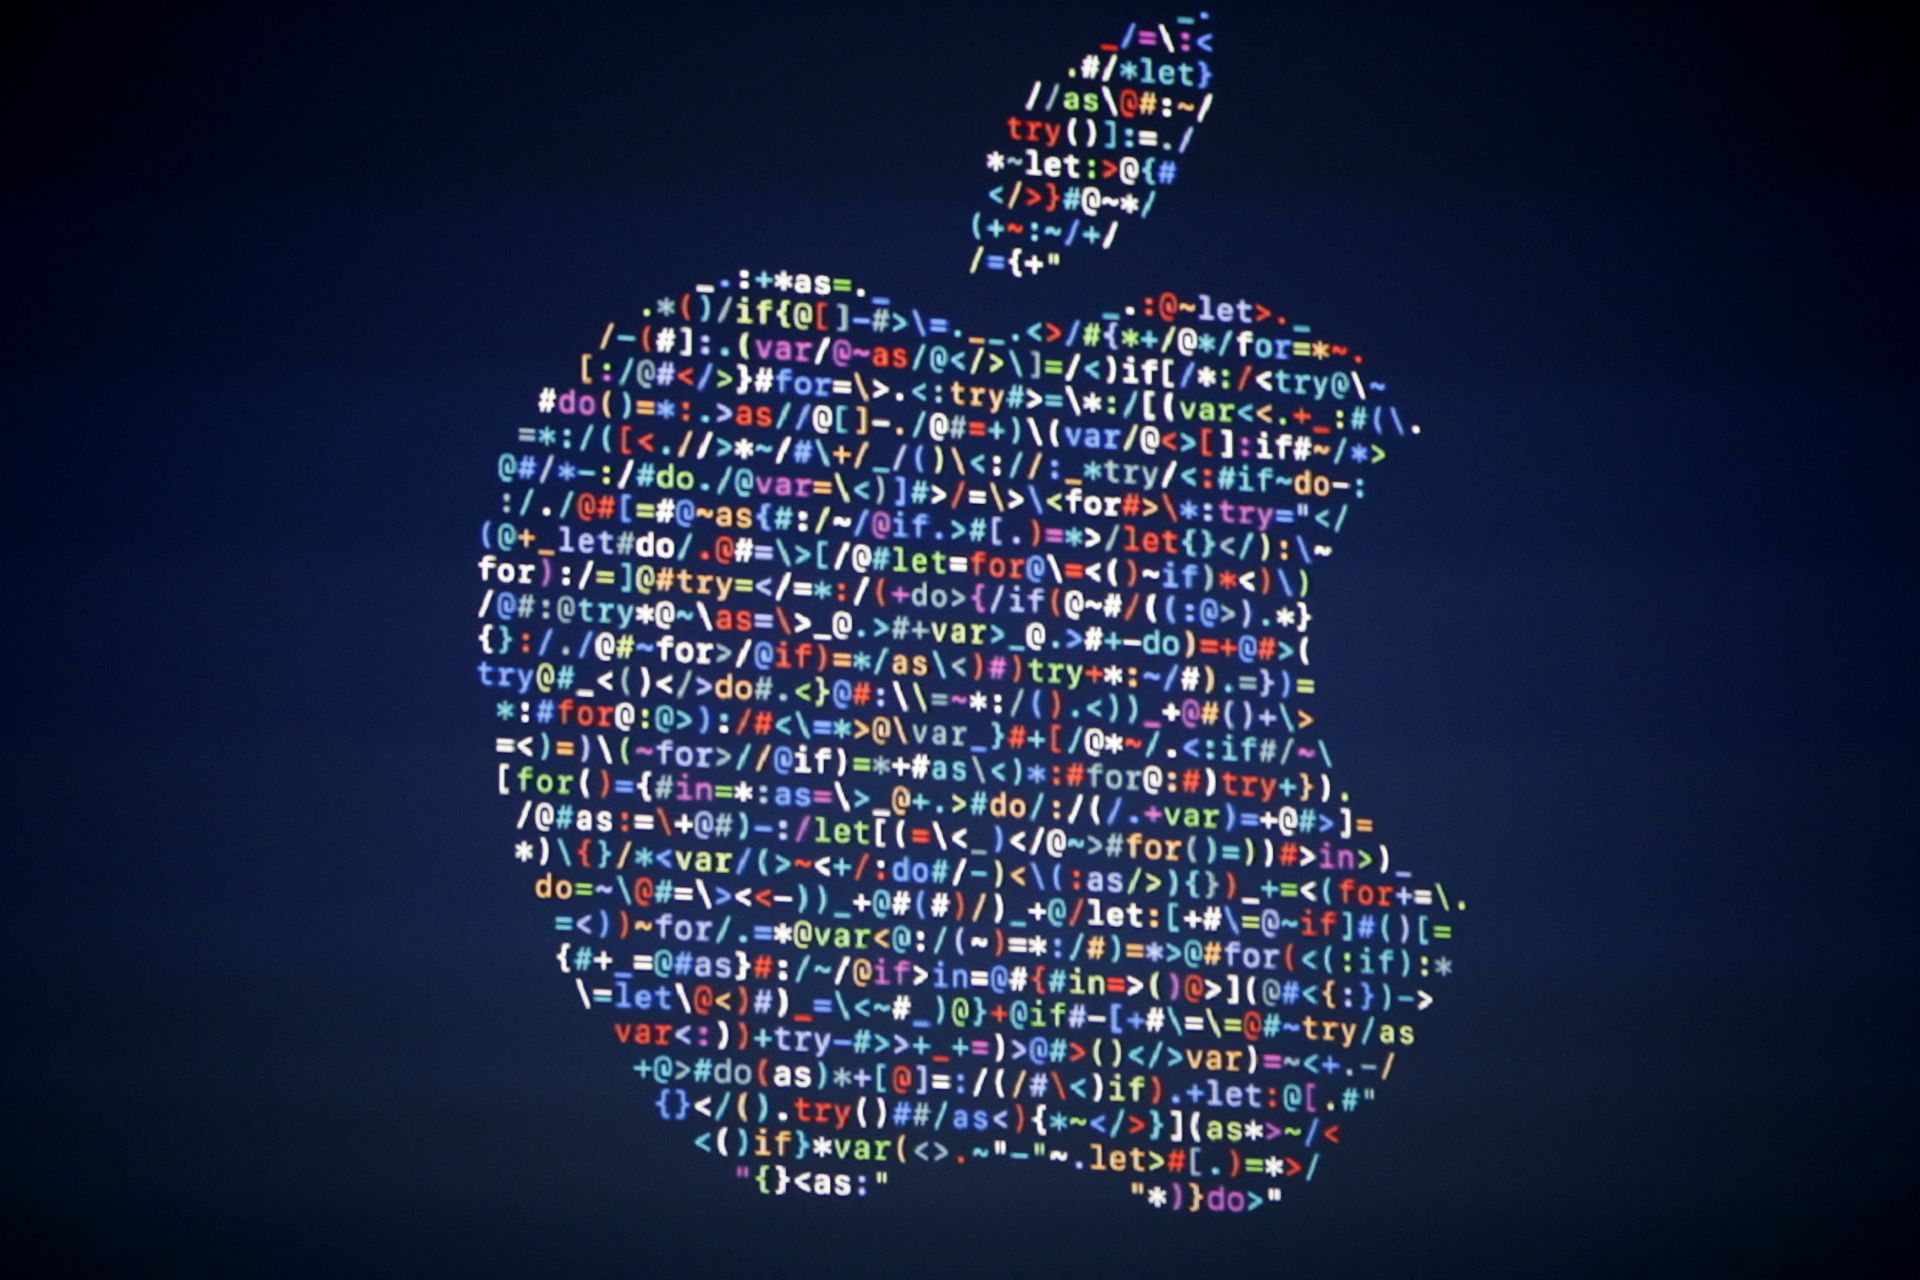 Акциите на Епъл се сринаха с 8% заради слабите продажби на iPhone